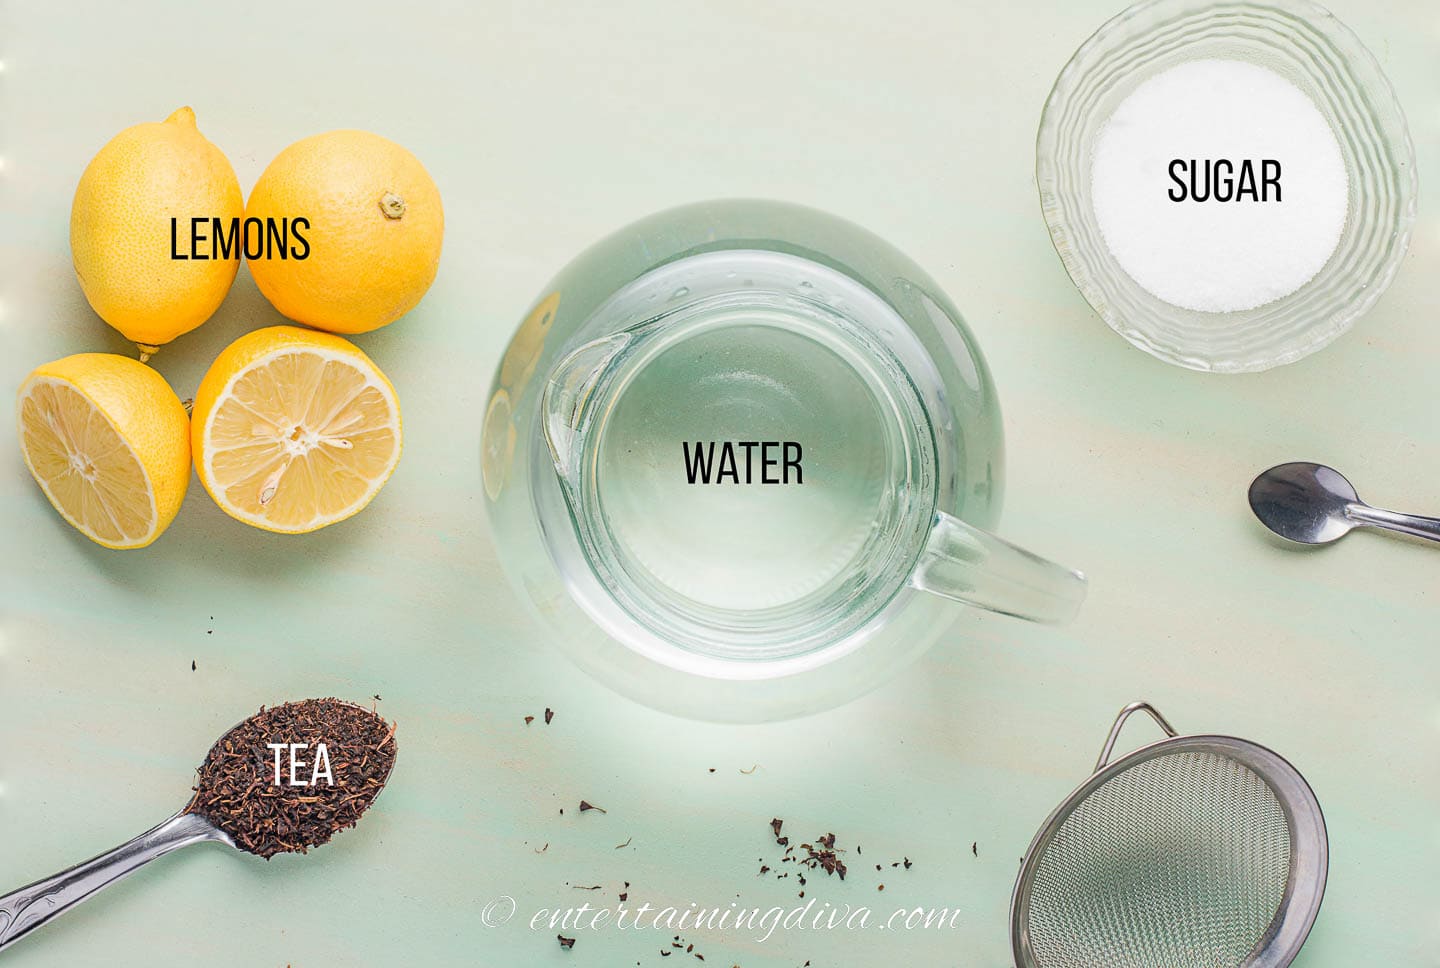 cold brew iced tea ingredients - lemons, water sugar and tea leaves